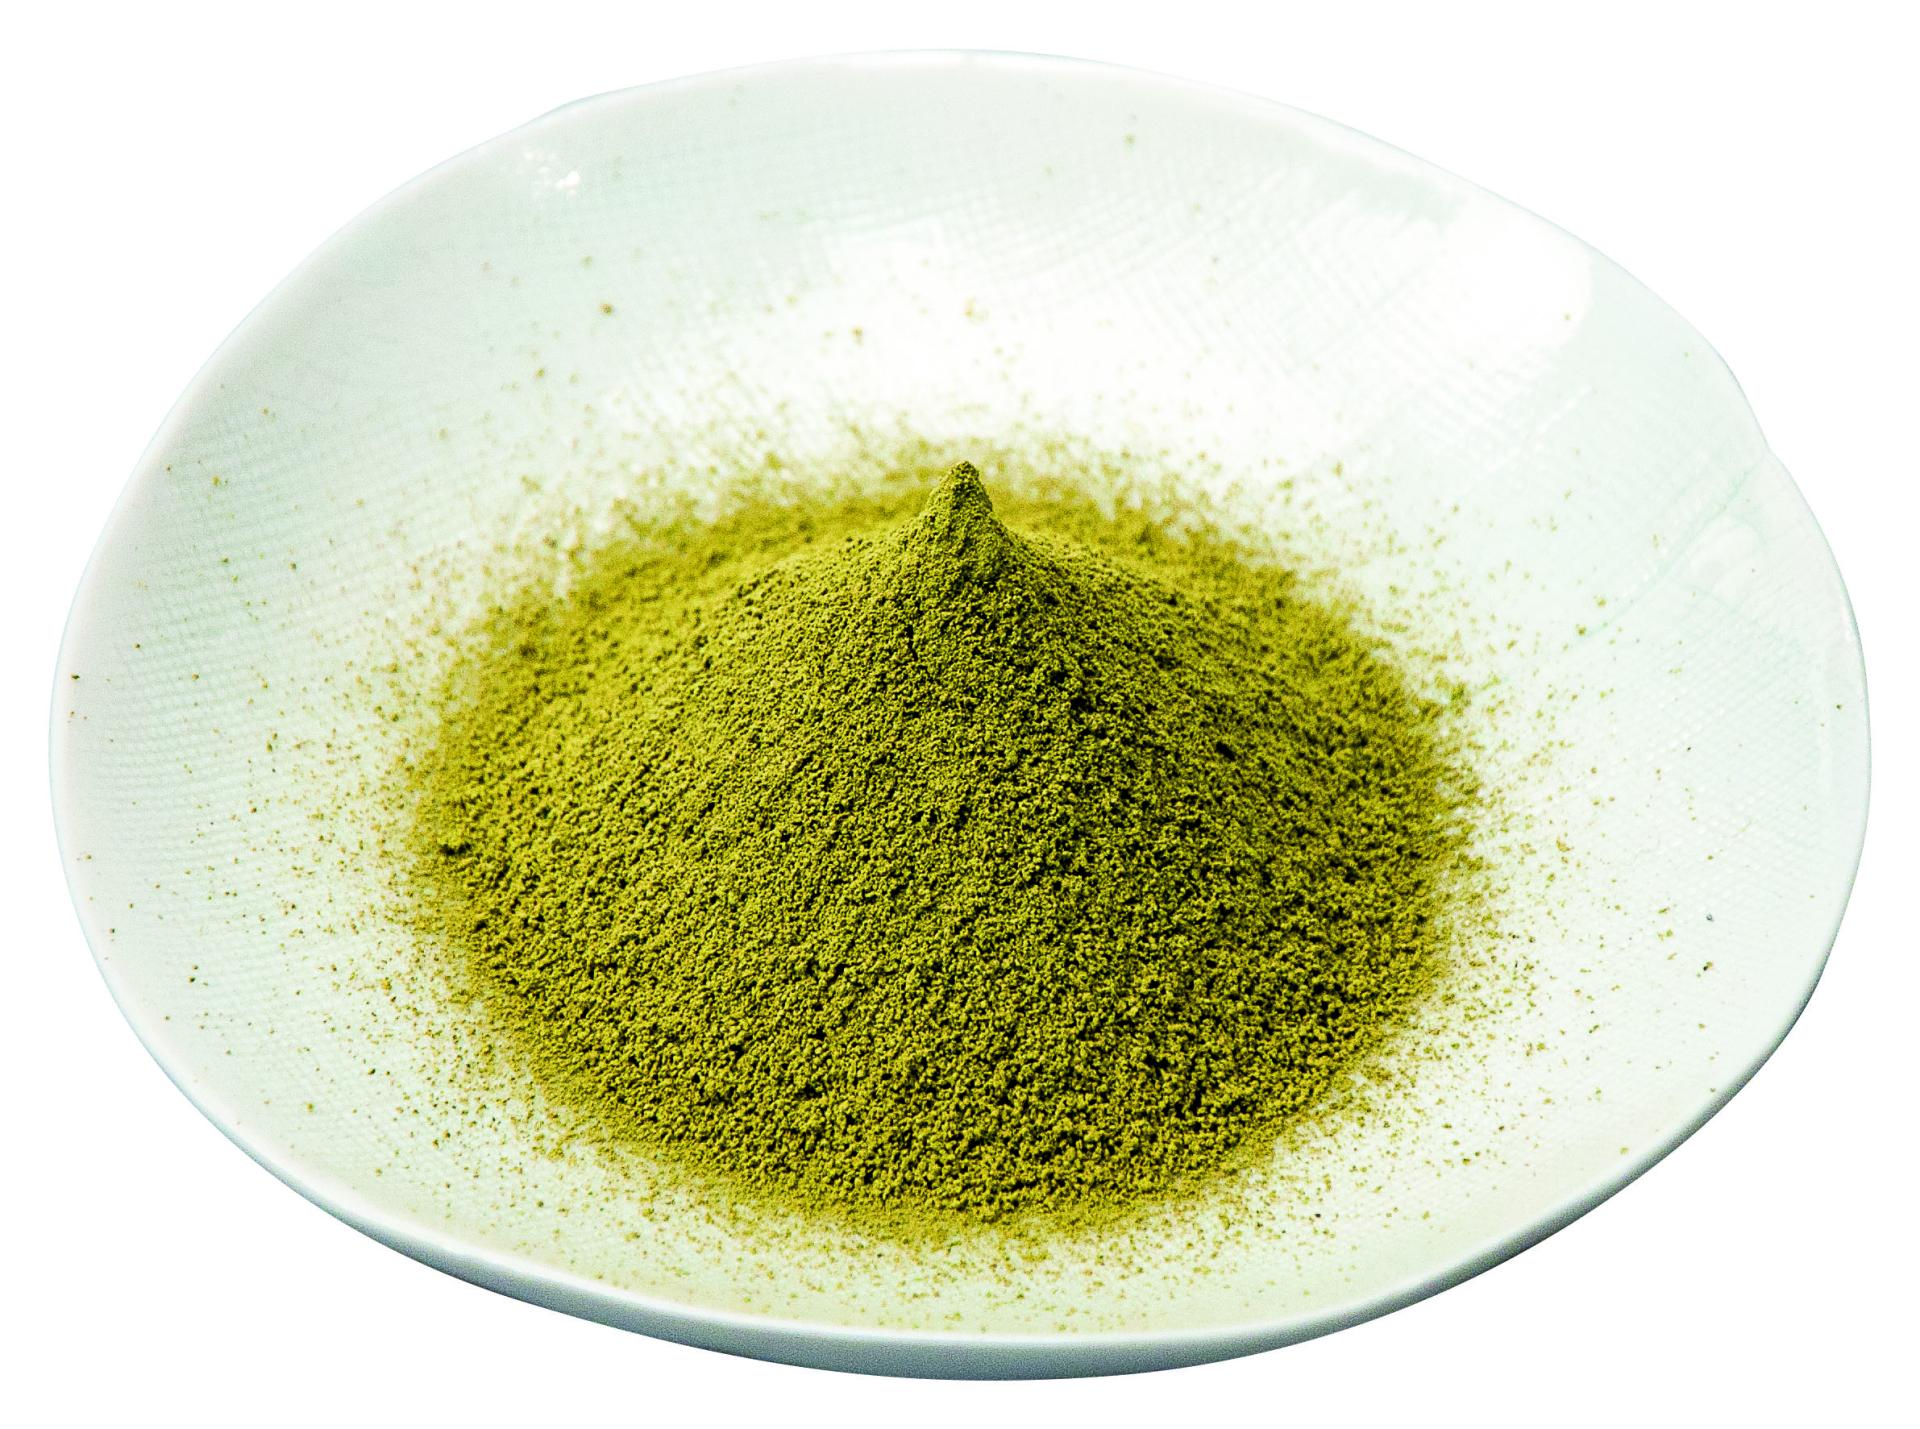 Benifuuki Powder - Organic Japanese Tea Powder